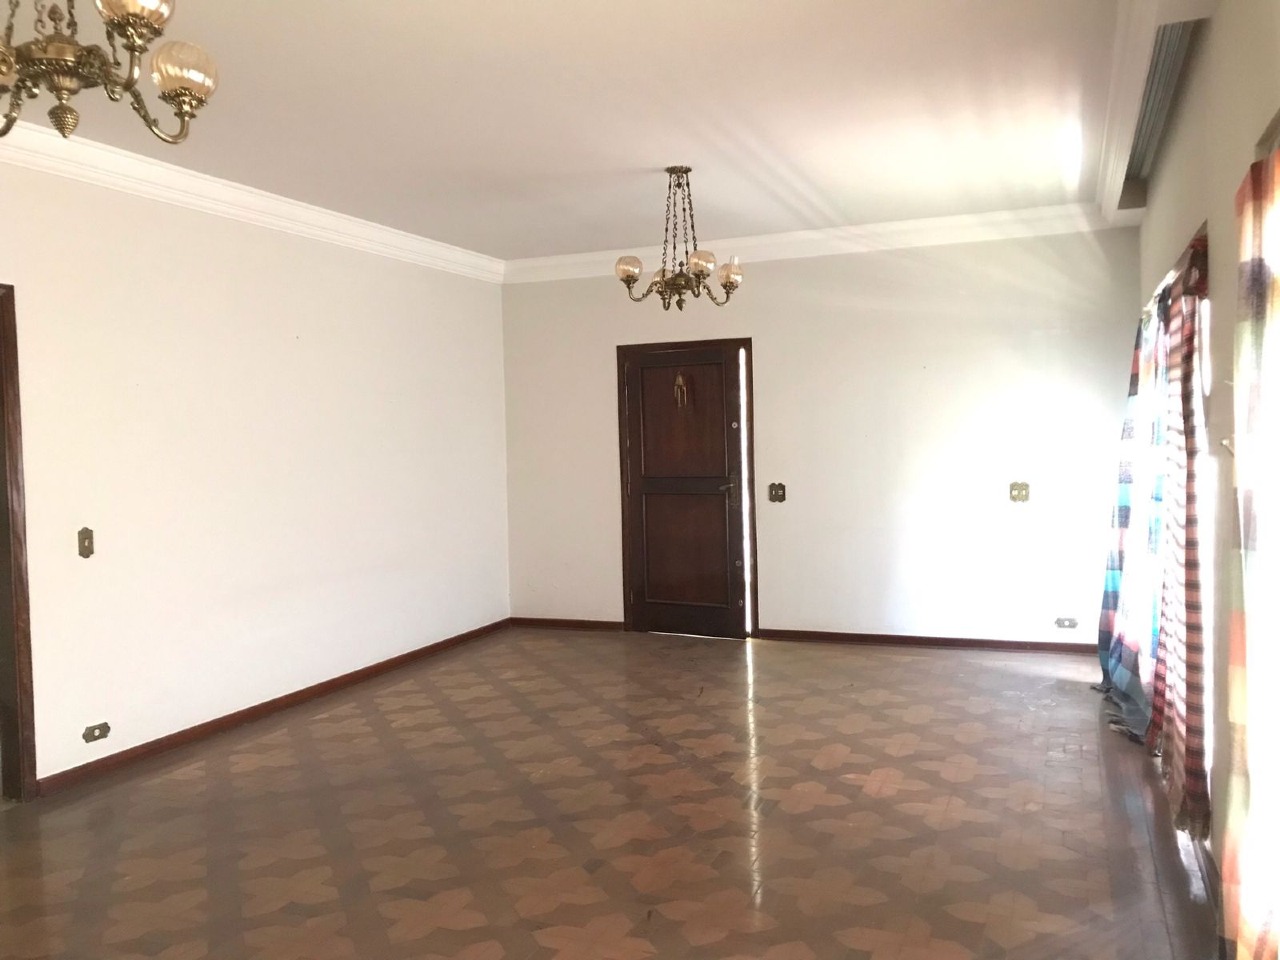 Casa para comprar, 4 quartos, 1 suíte, no bairro Cidade Alta em Piracicaba - SP